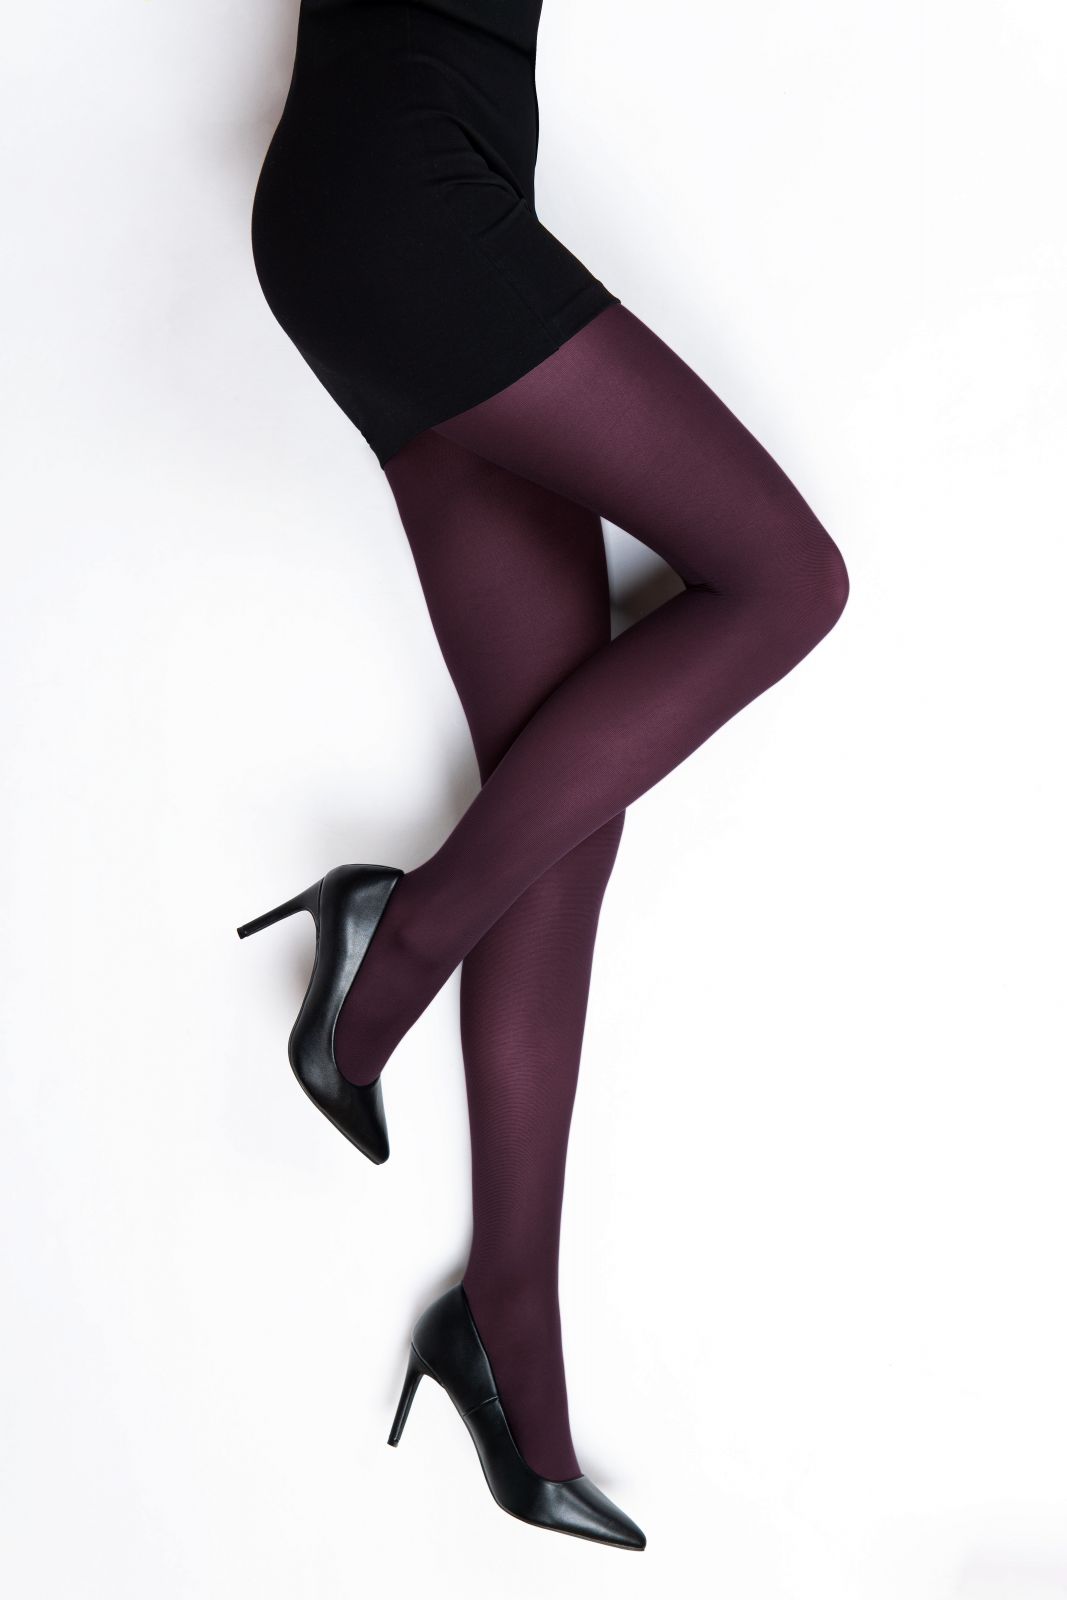 Lady B punčochové kalhoty MICRO tights 50 DEN mora fialová/tmavá